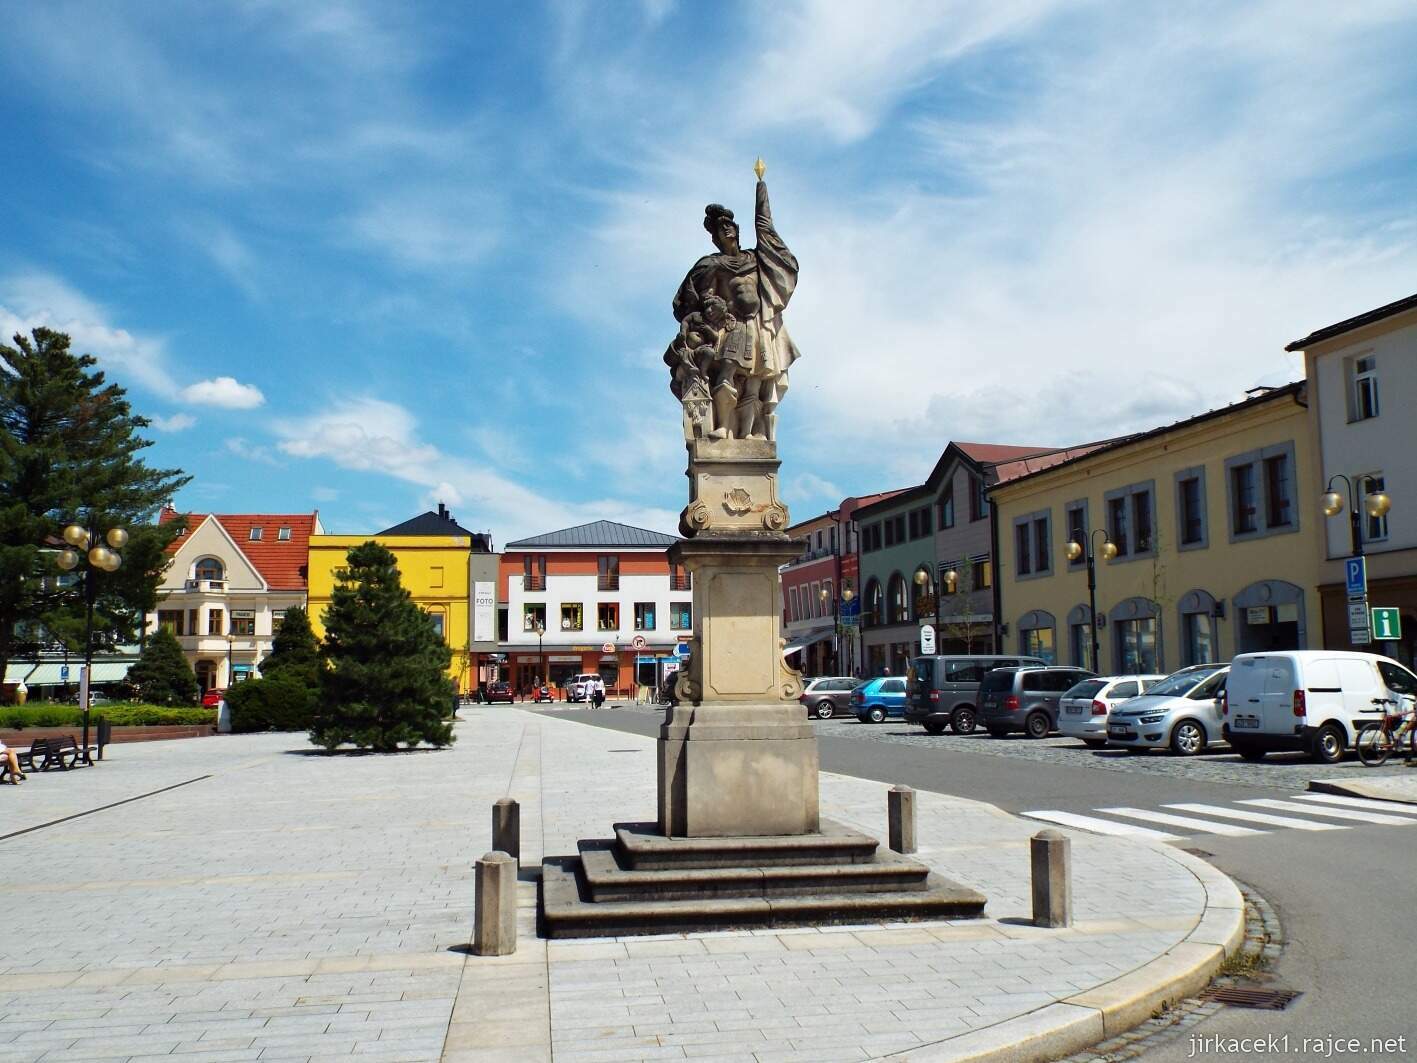 004 - Rožnov pod Radhoštěm - Masarykovo náměstí 04 - socha svatého Floriána